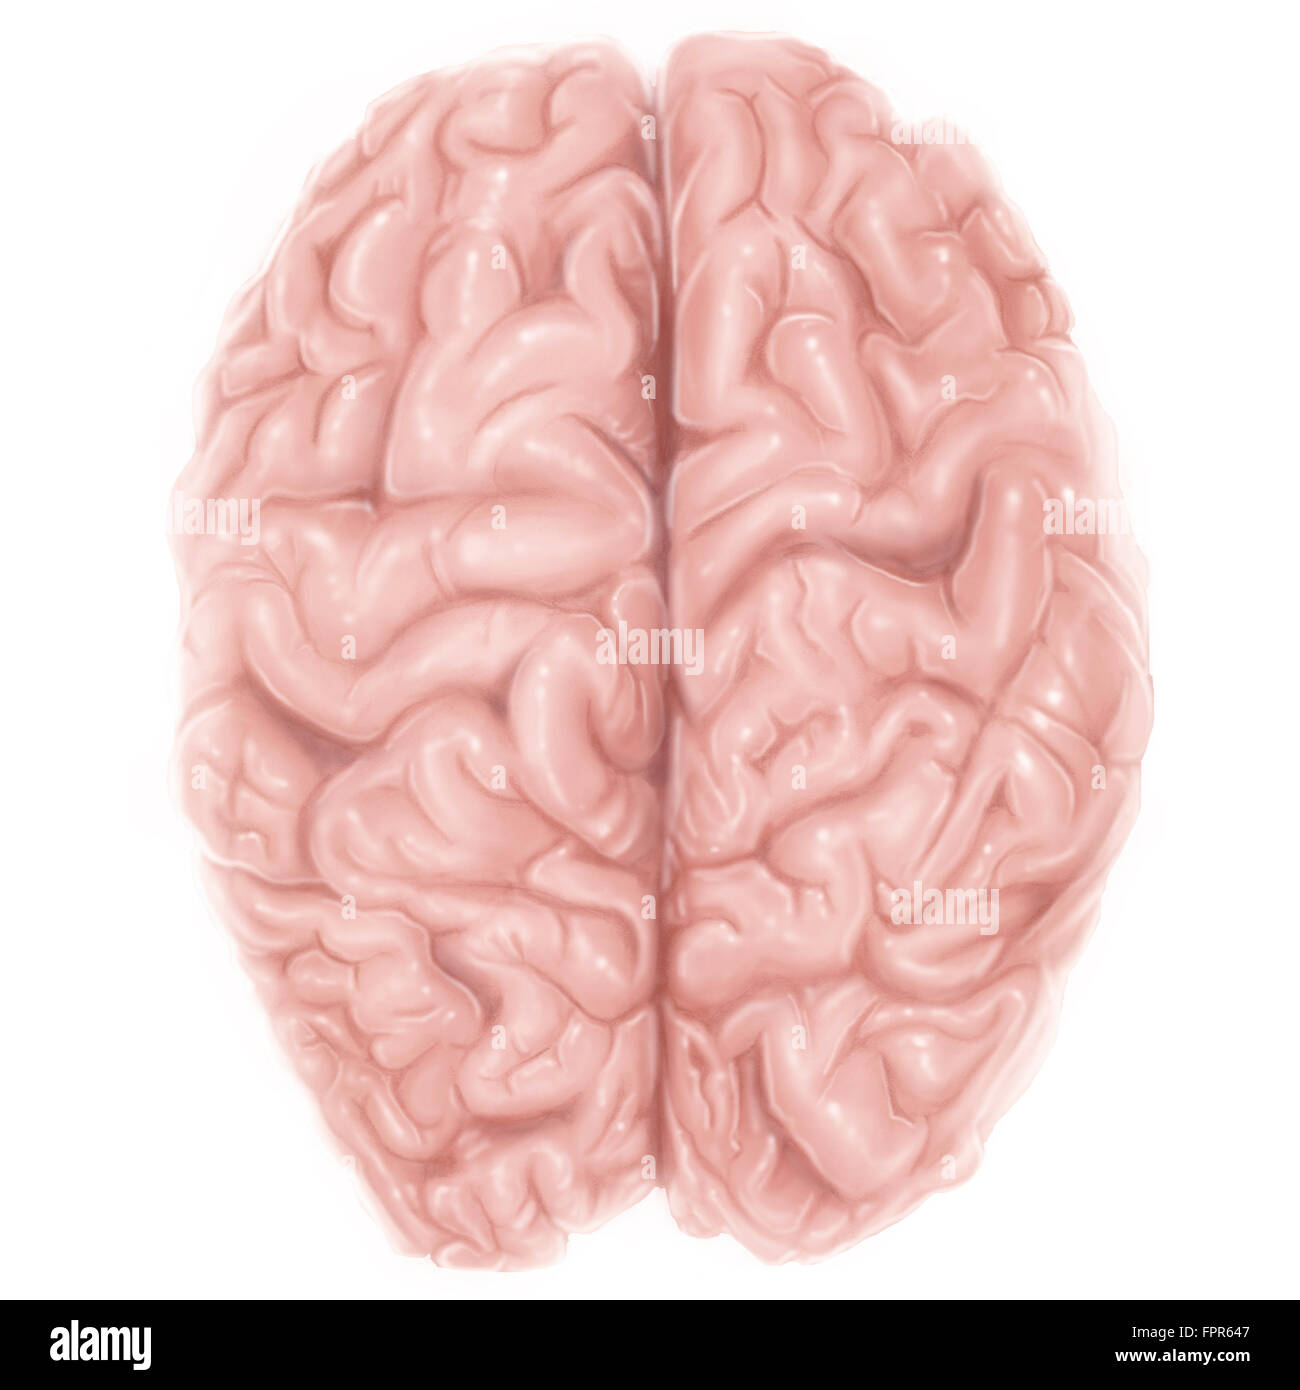 Vista superiore del cervello umano. Foto Stock